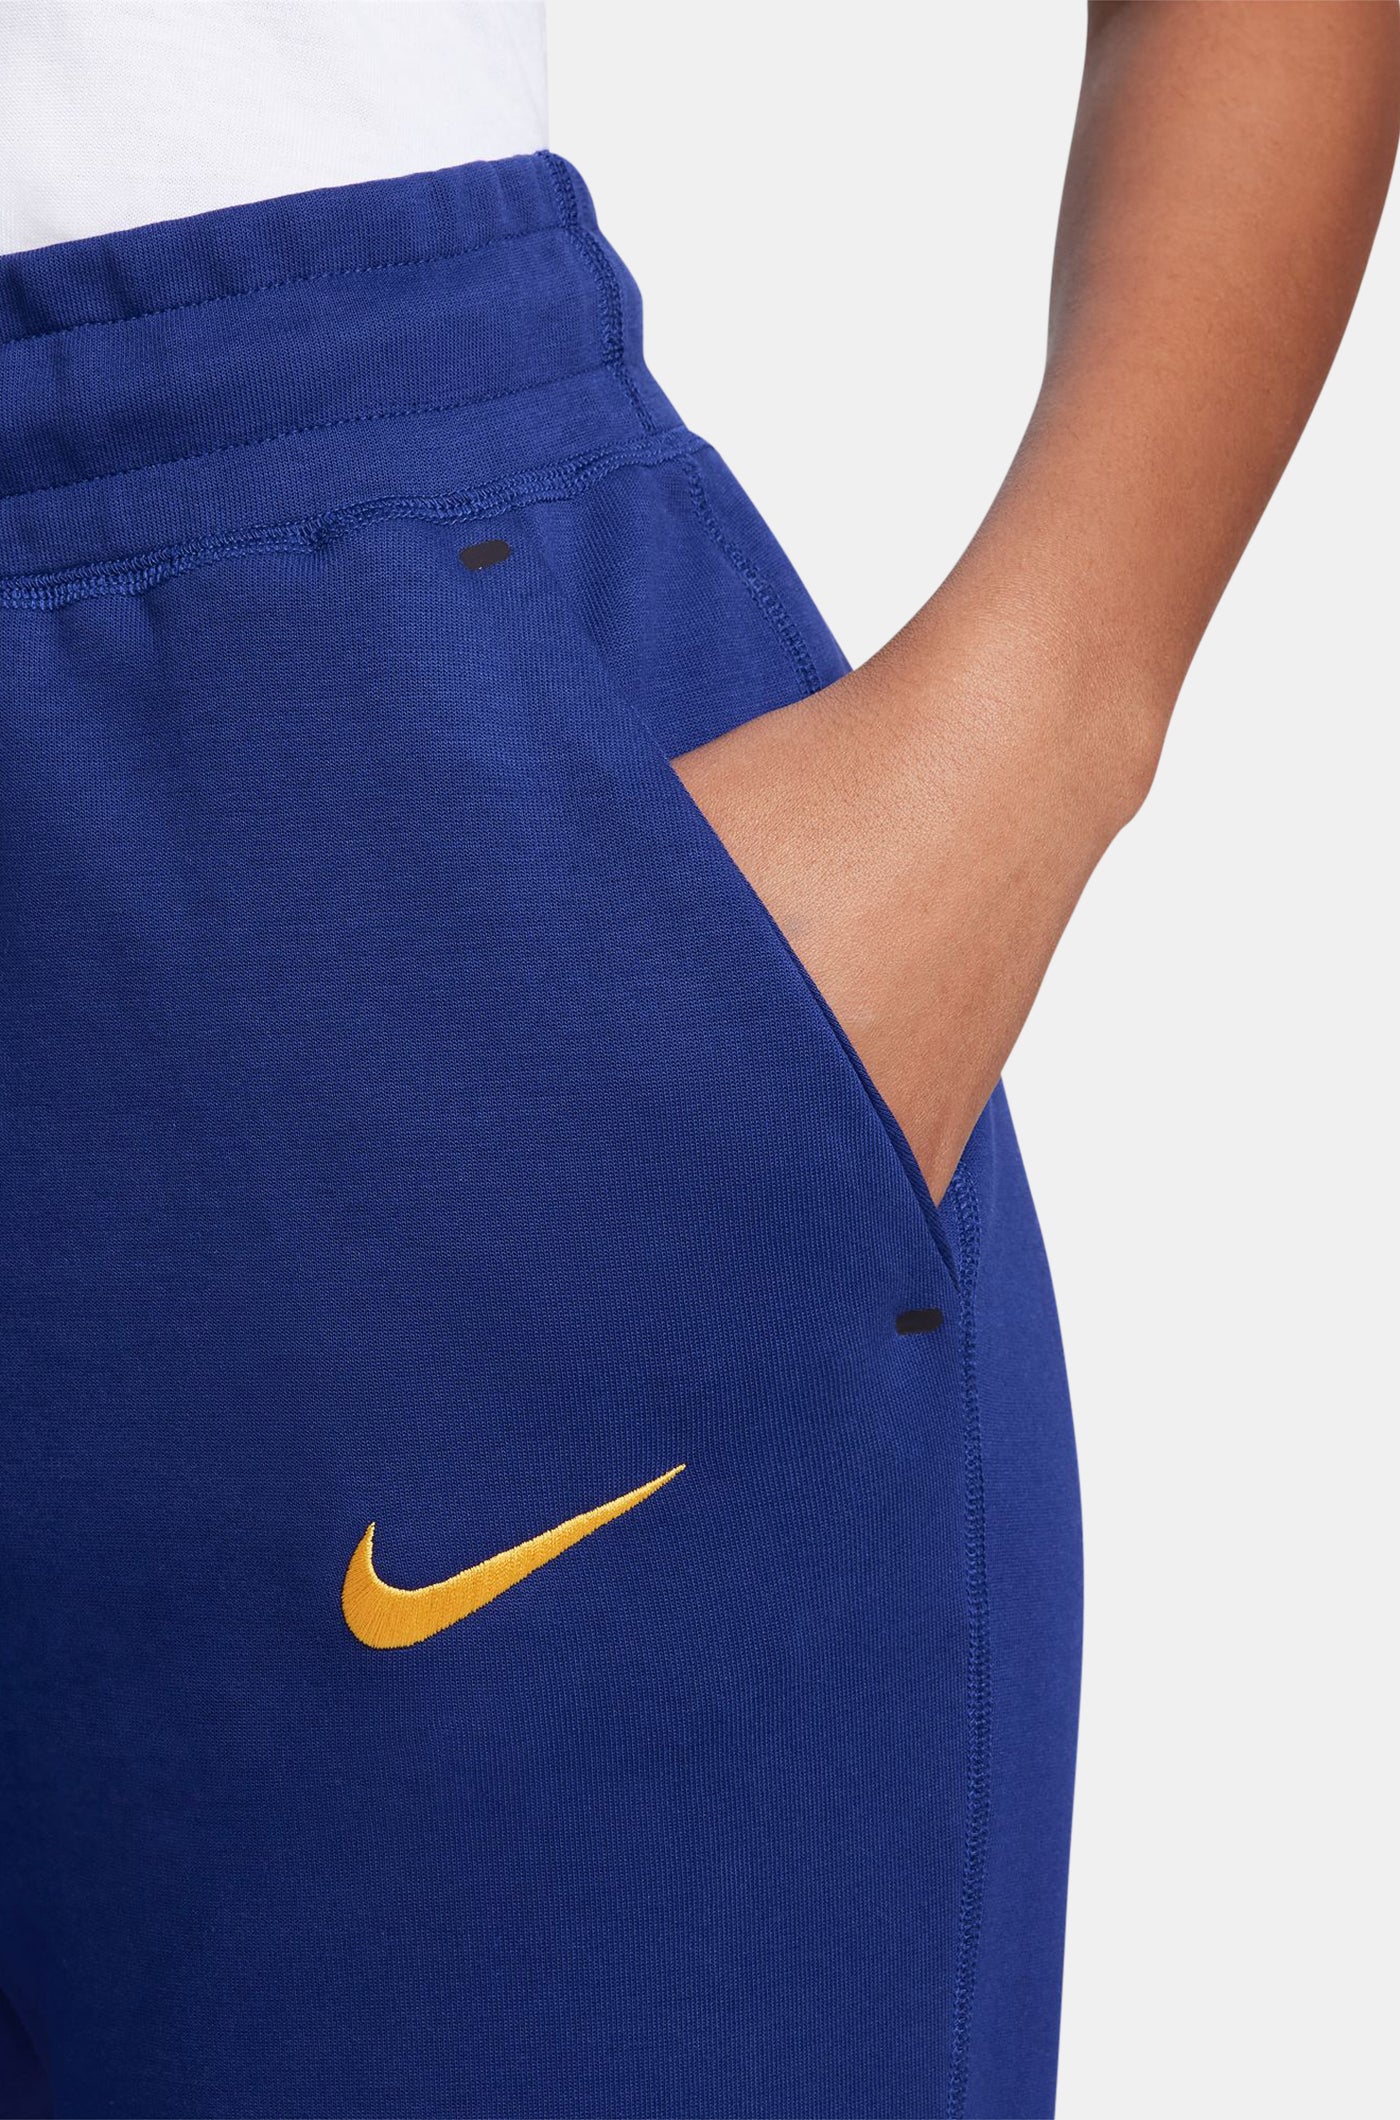 Pantalon Tech bleu royal Barça Nike - Femme